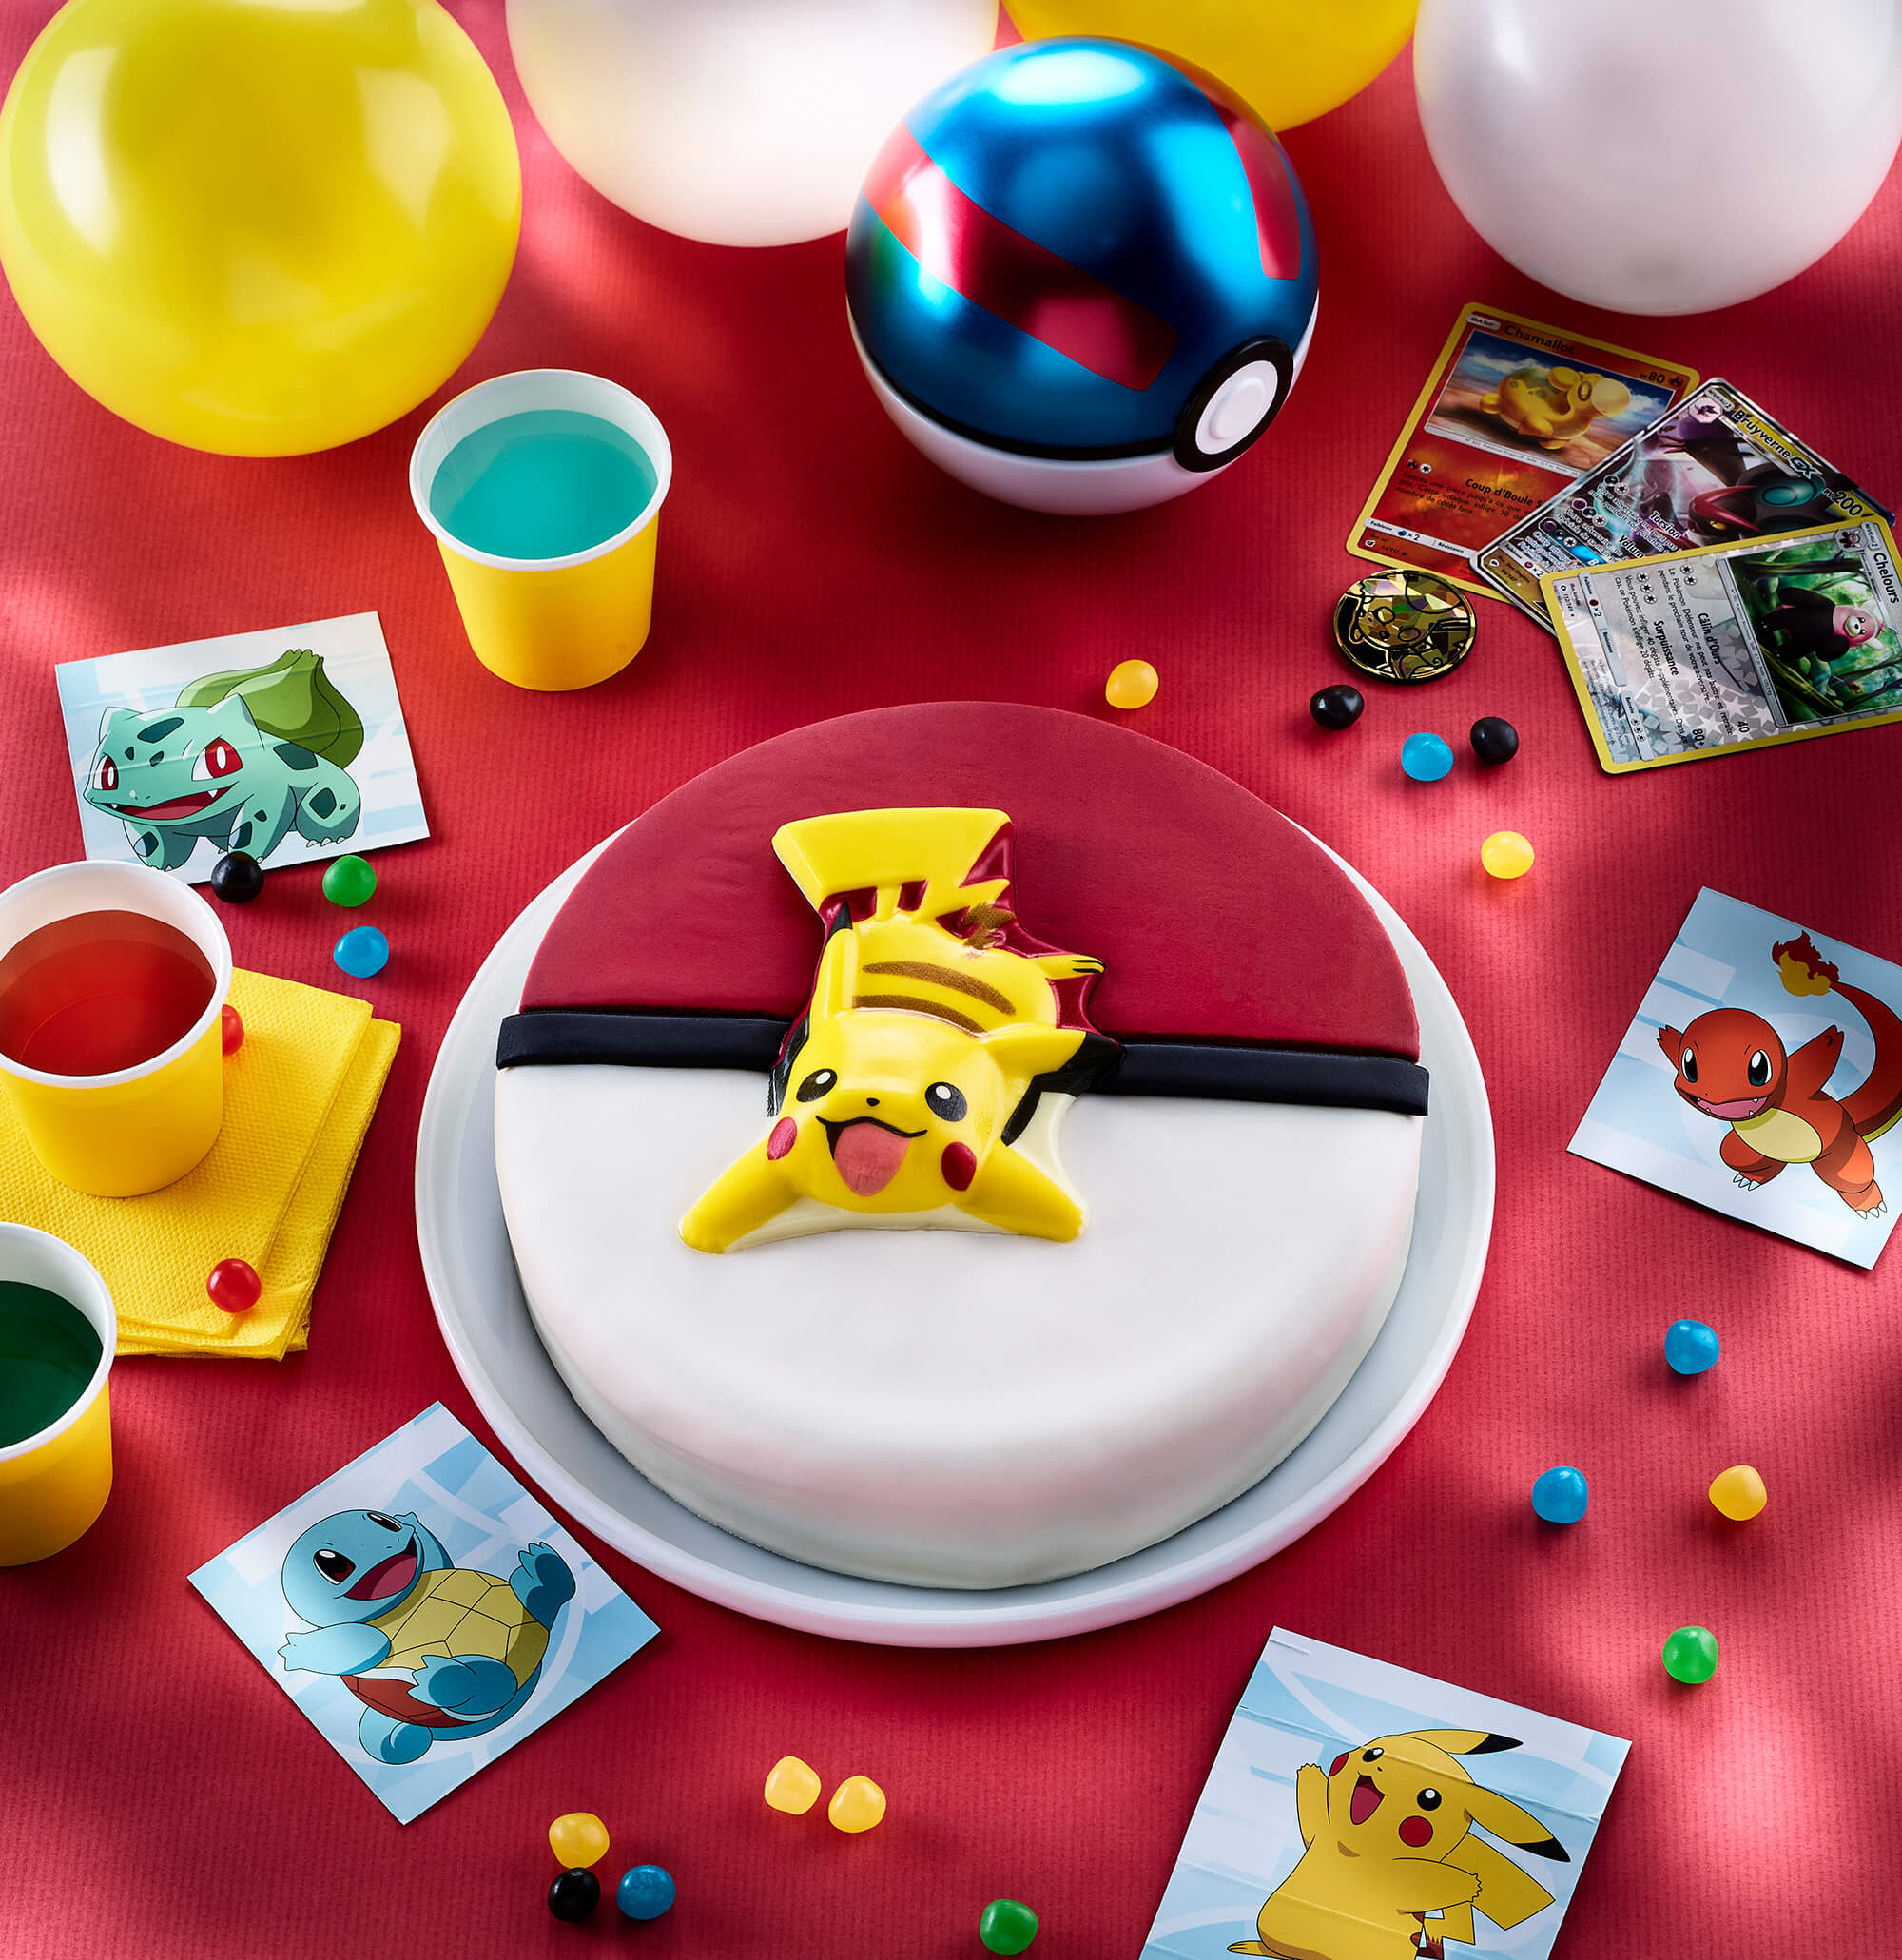 Comment réaliser un anniversaire sur la thématique des Pokémon ? - N°1  Peluche Pokemon Officielle